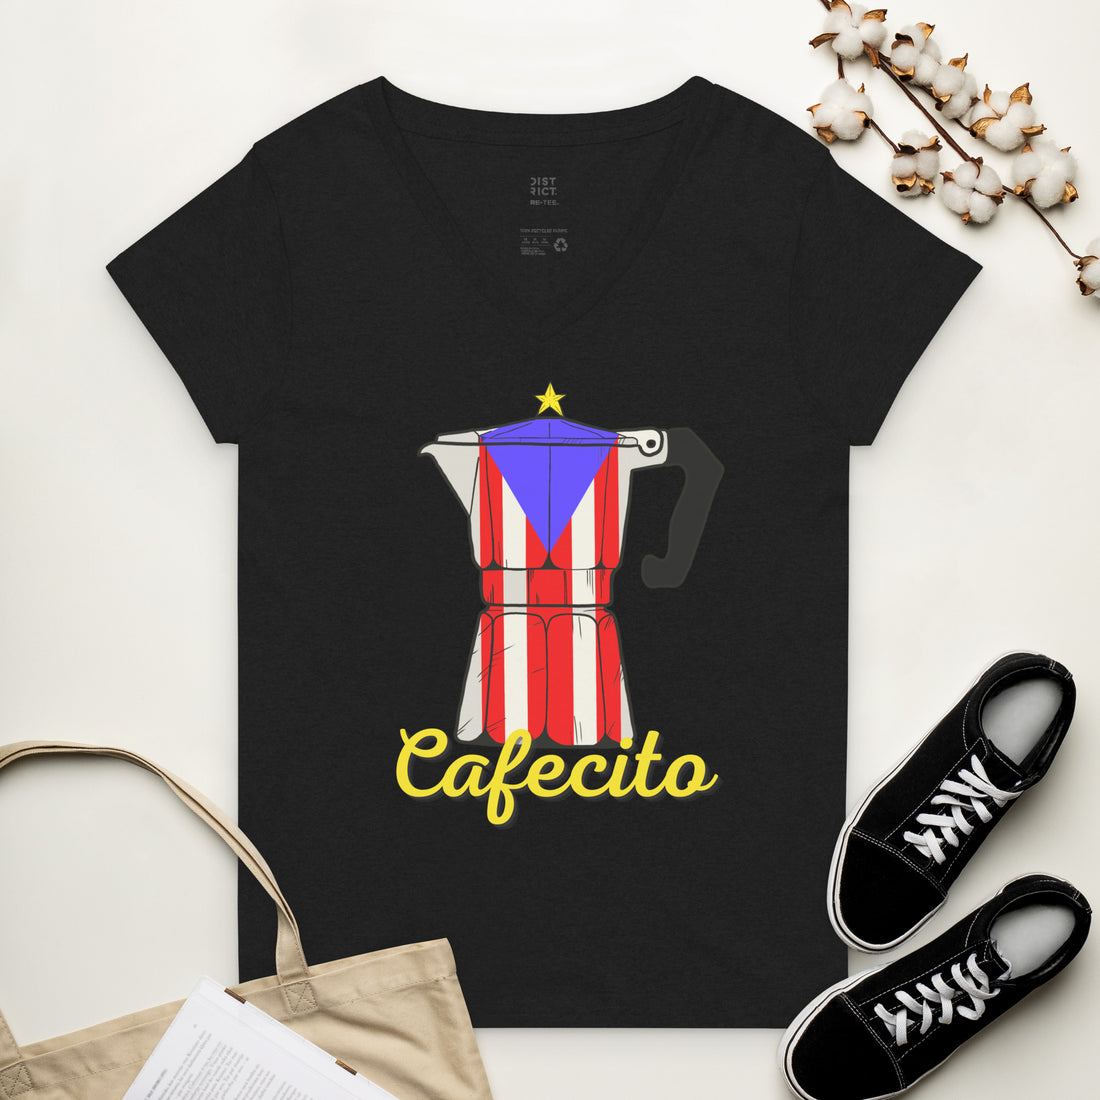 Cafecito- Women’s recycled v-neck t-shirt